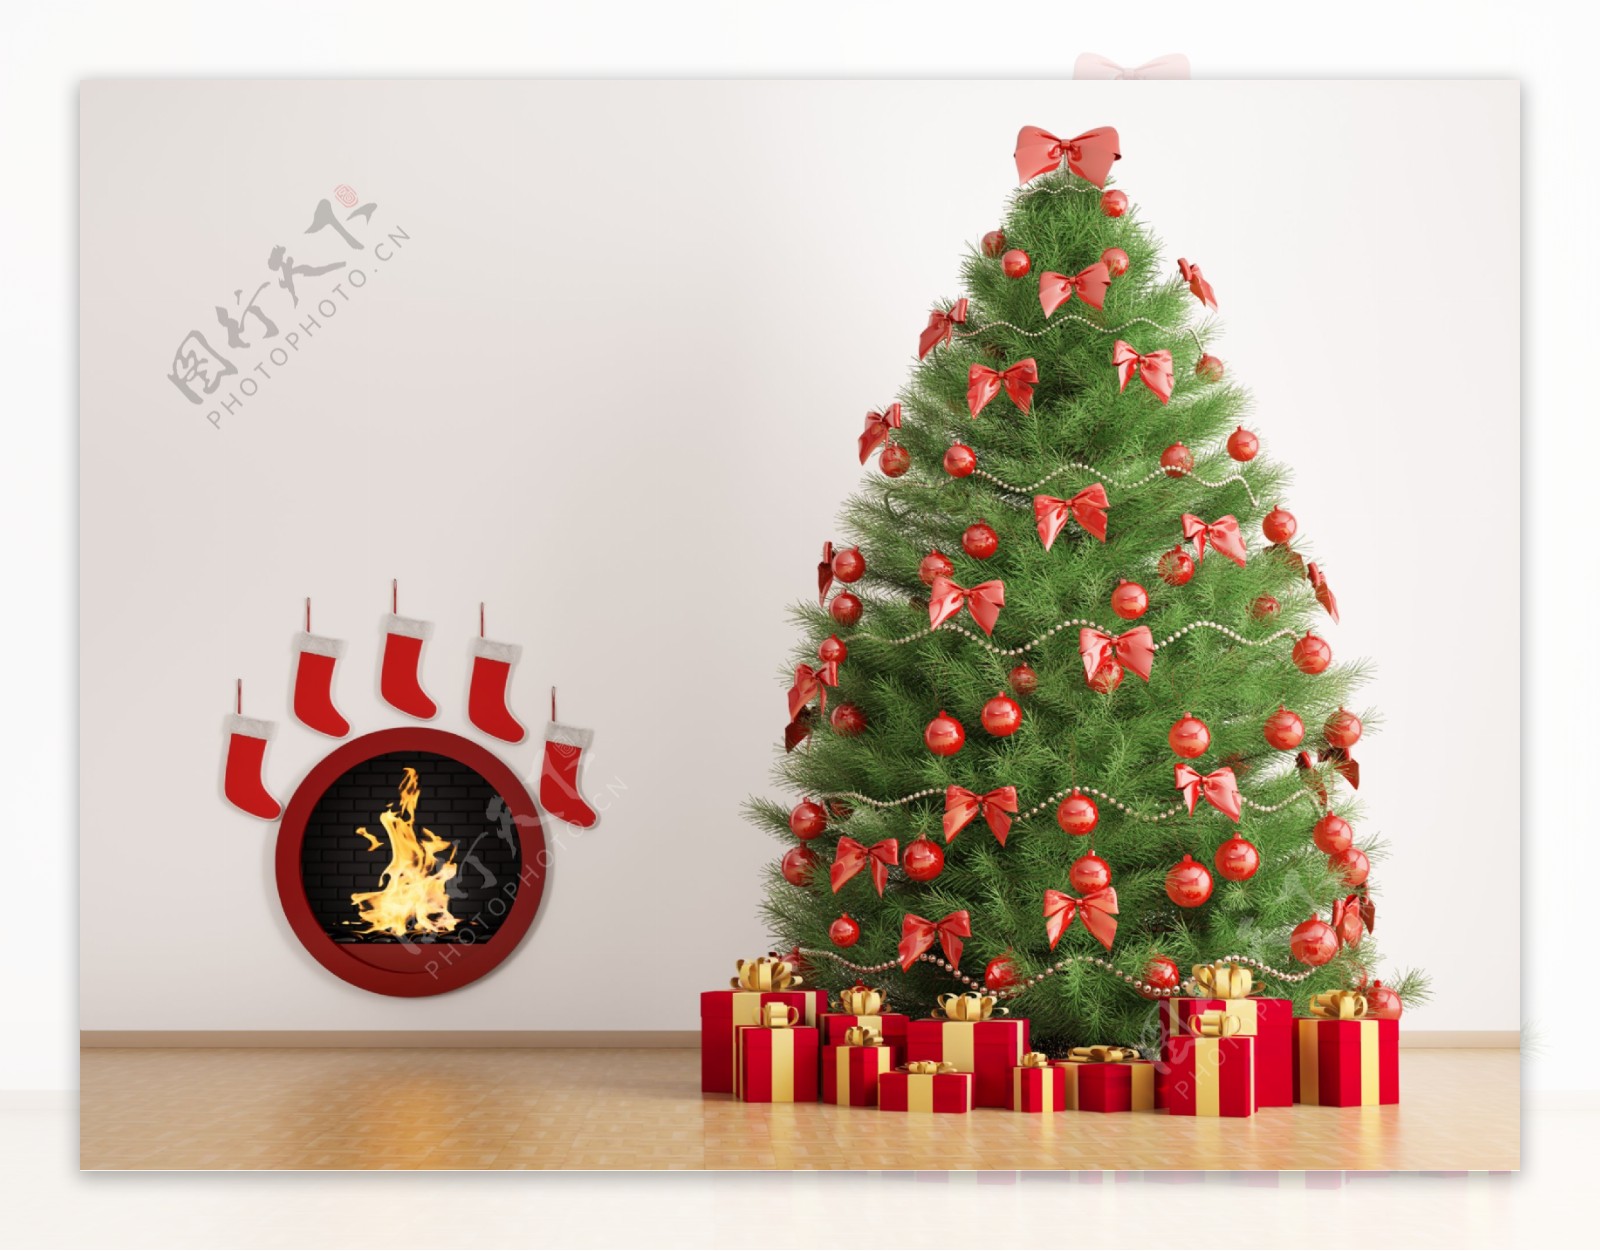 壁炉图案和圣诞树